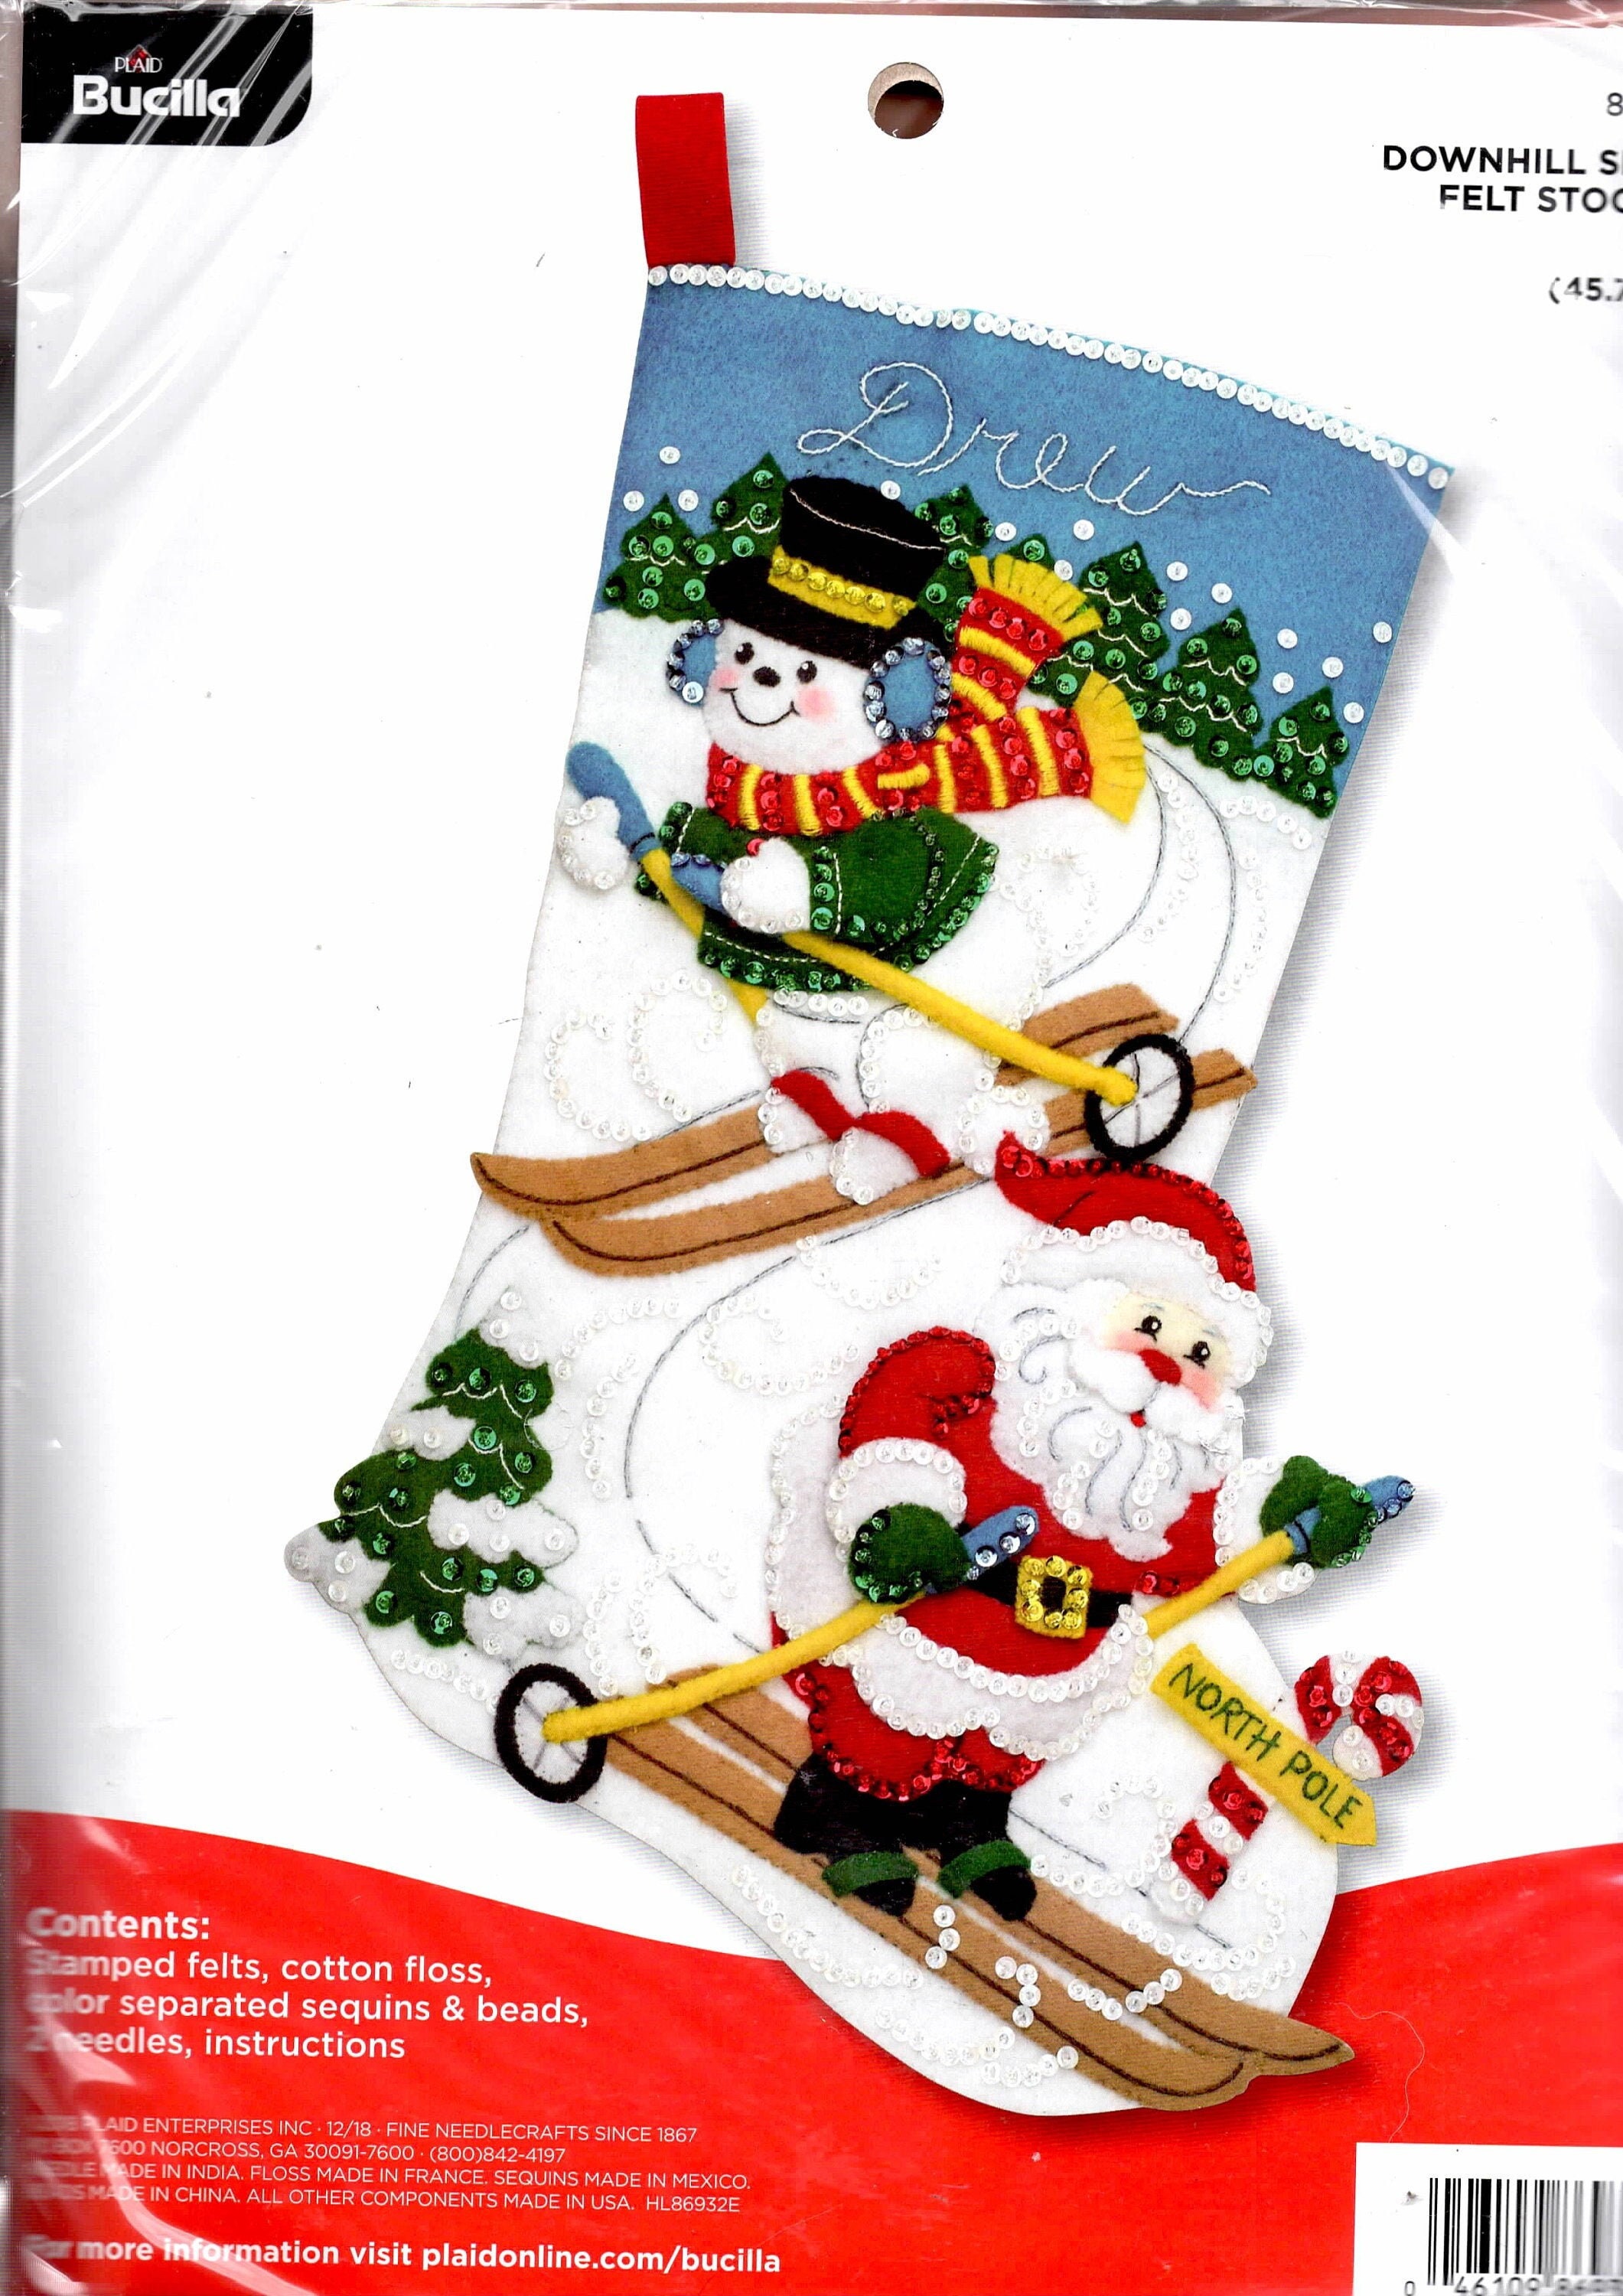 Kit for Children's Felt Stocking Kitchristmas Felt Stocking